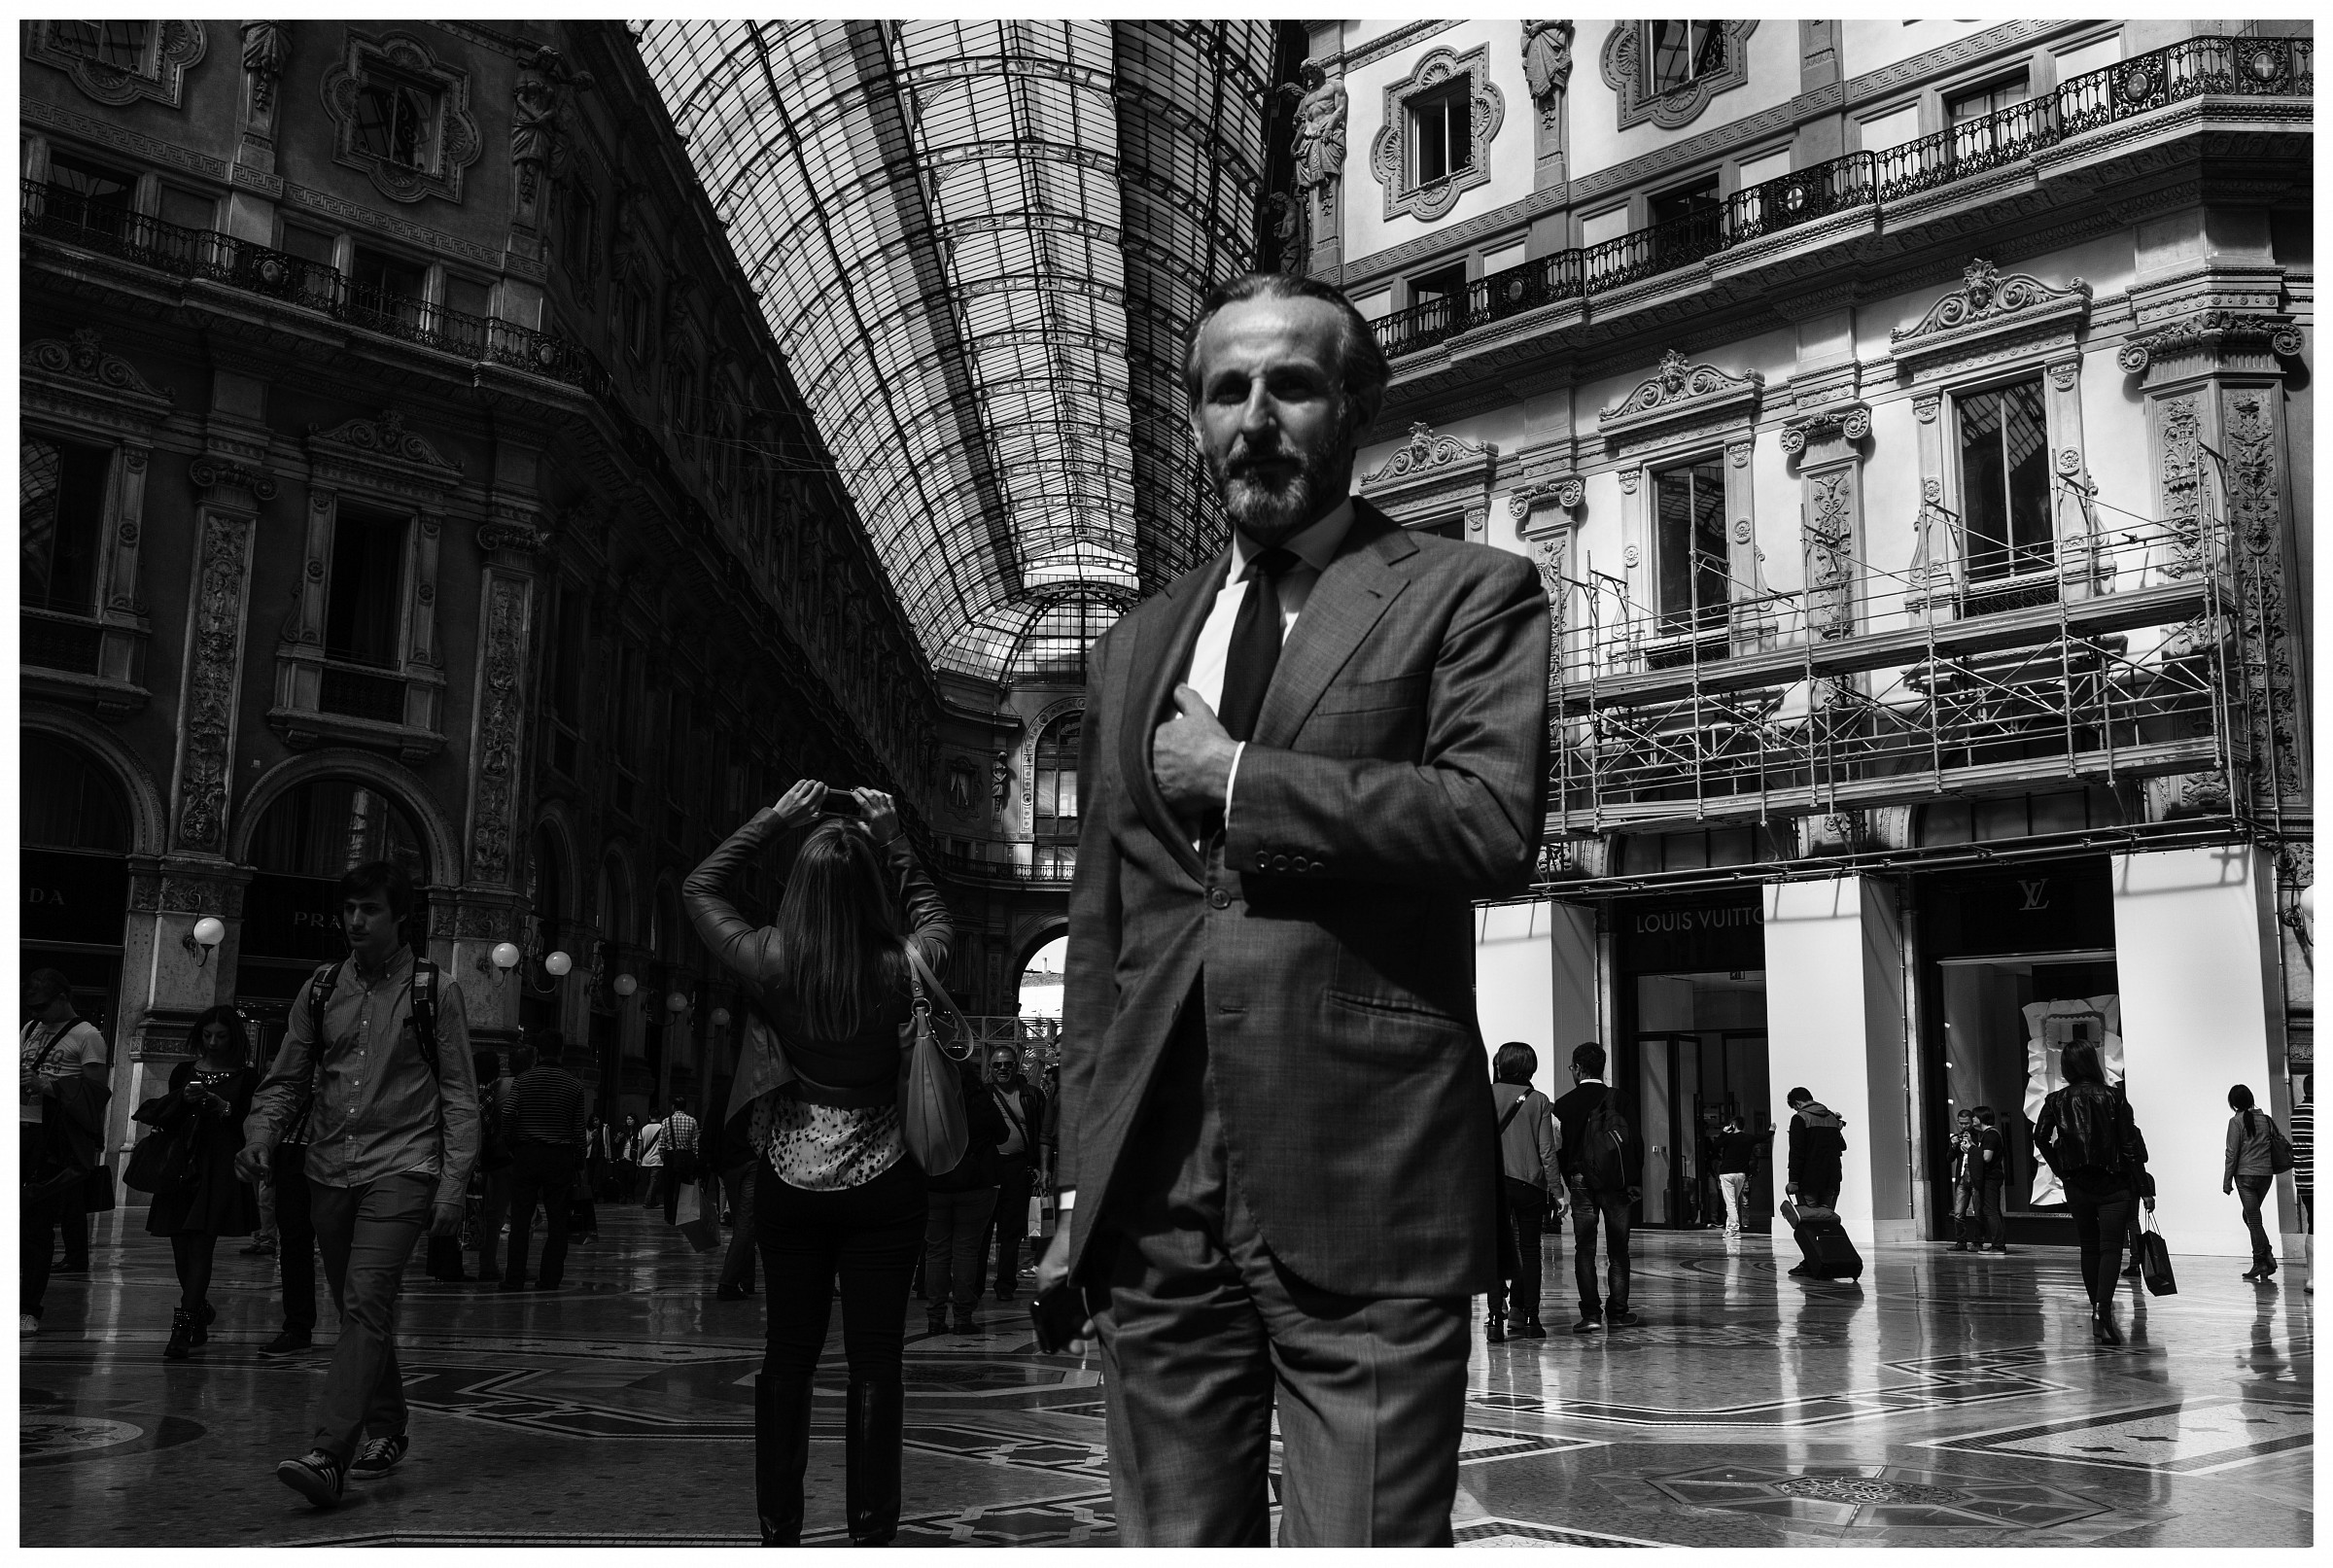 Milan - Galleria V. Emanuele...